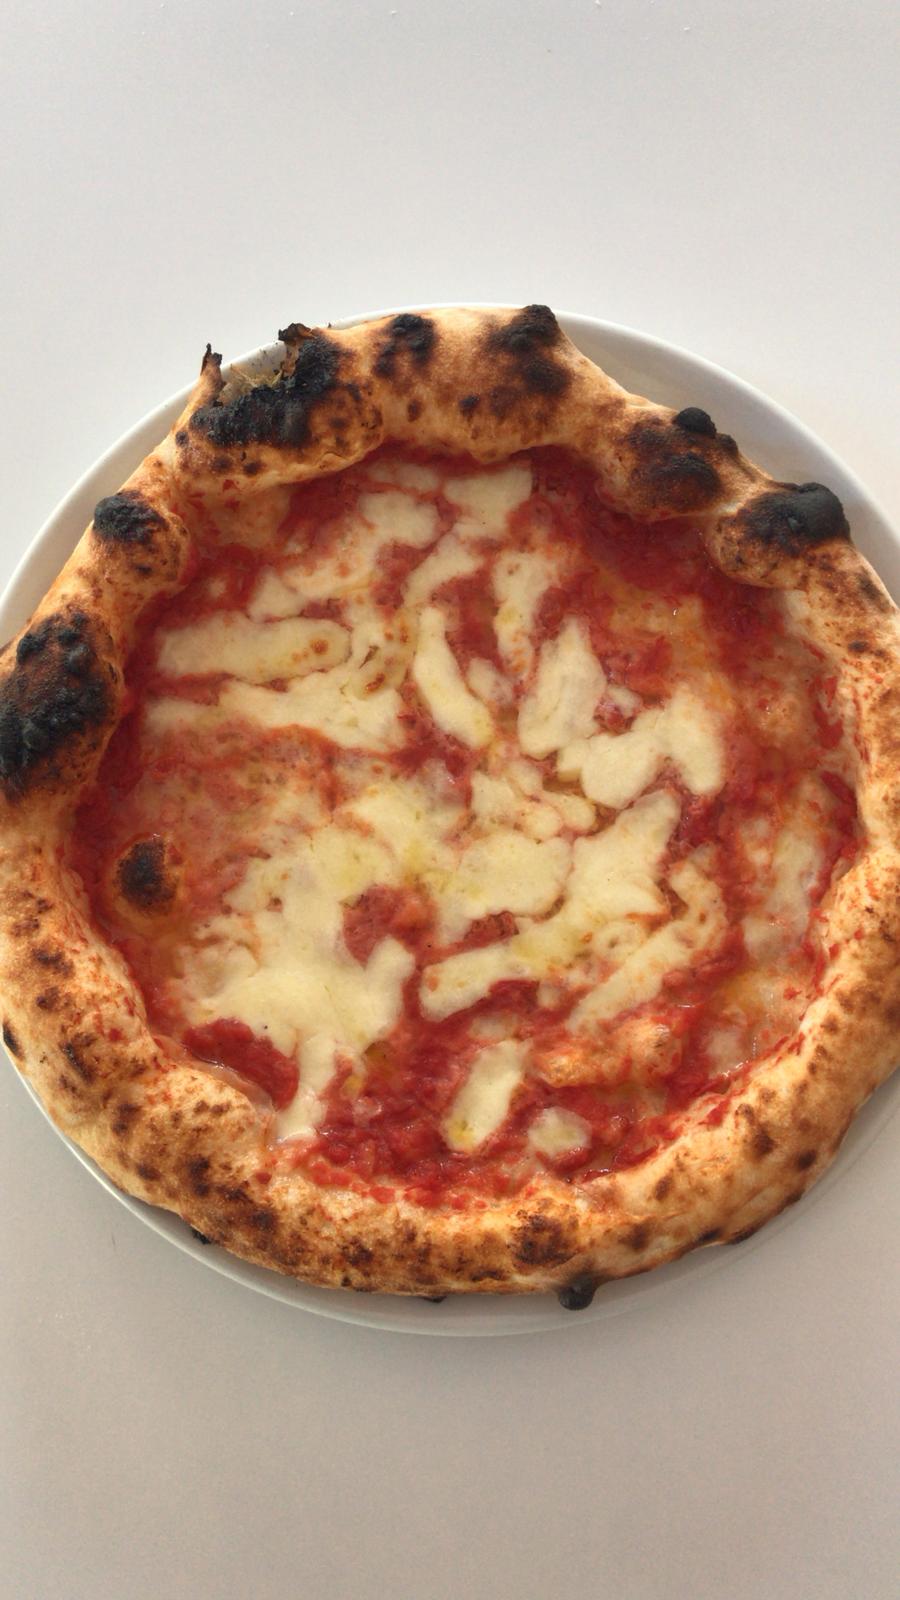 < img src="https://www.la-notizia.net/pizza" alt="pizza"